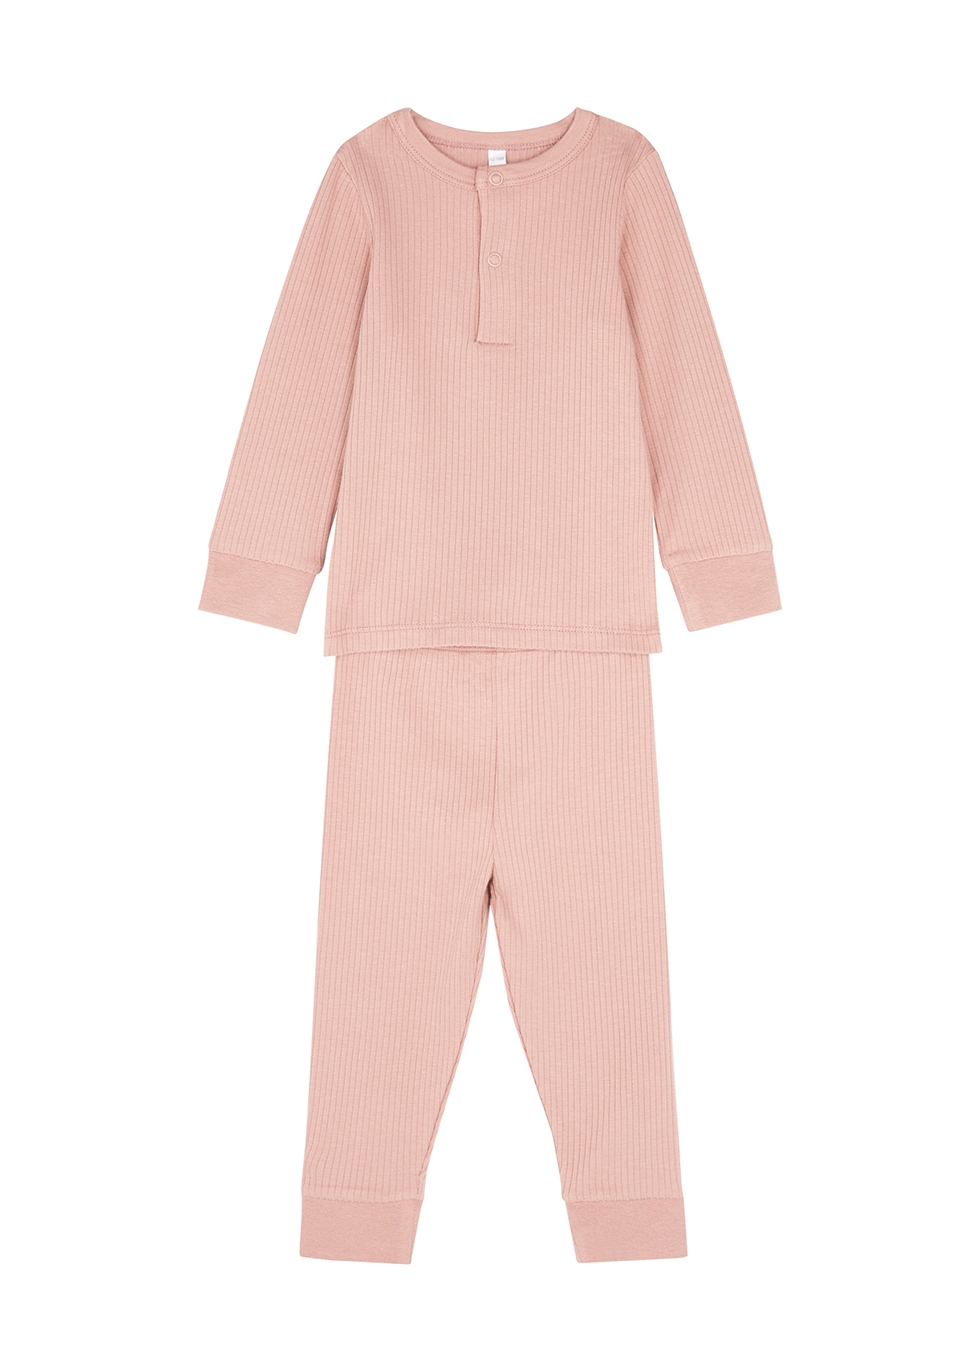 Mori Babies' Dusty Pink Ribbed Jersey Pyjama Set